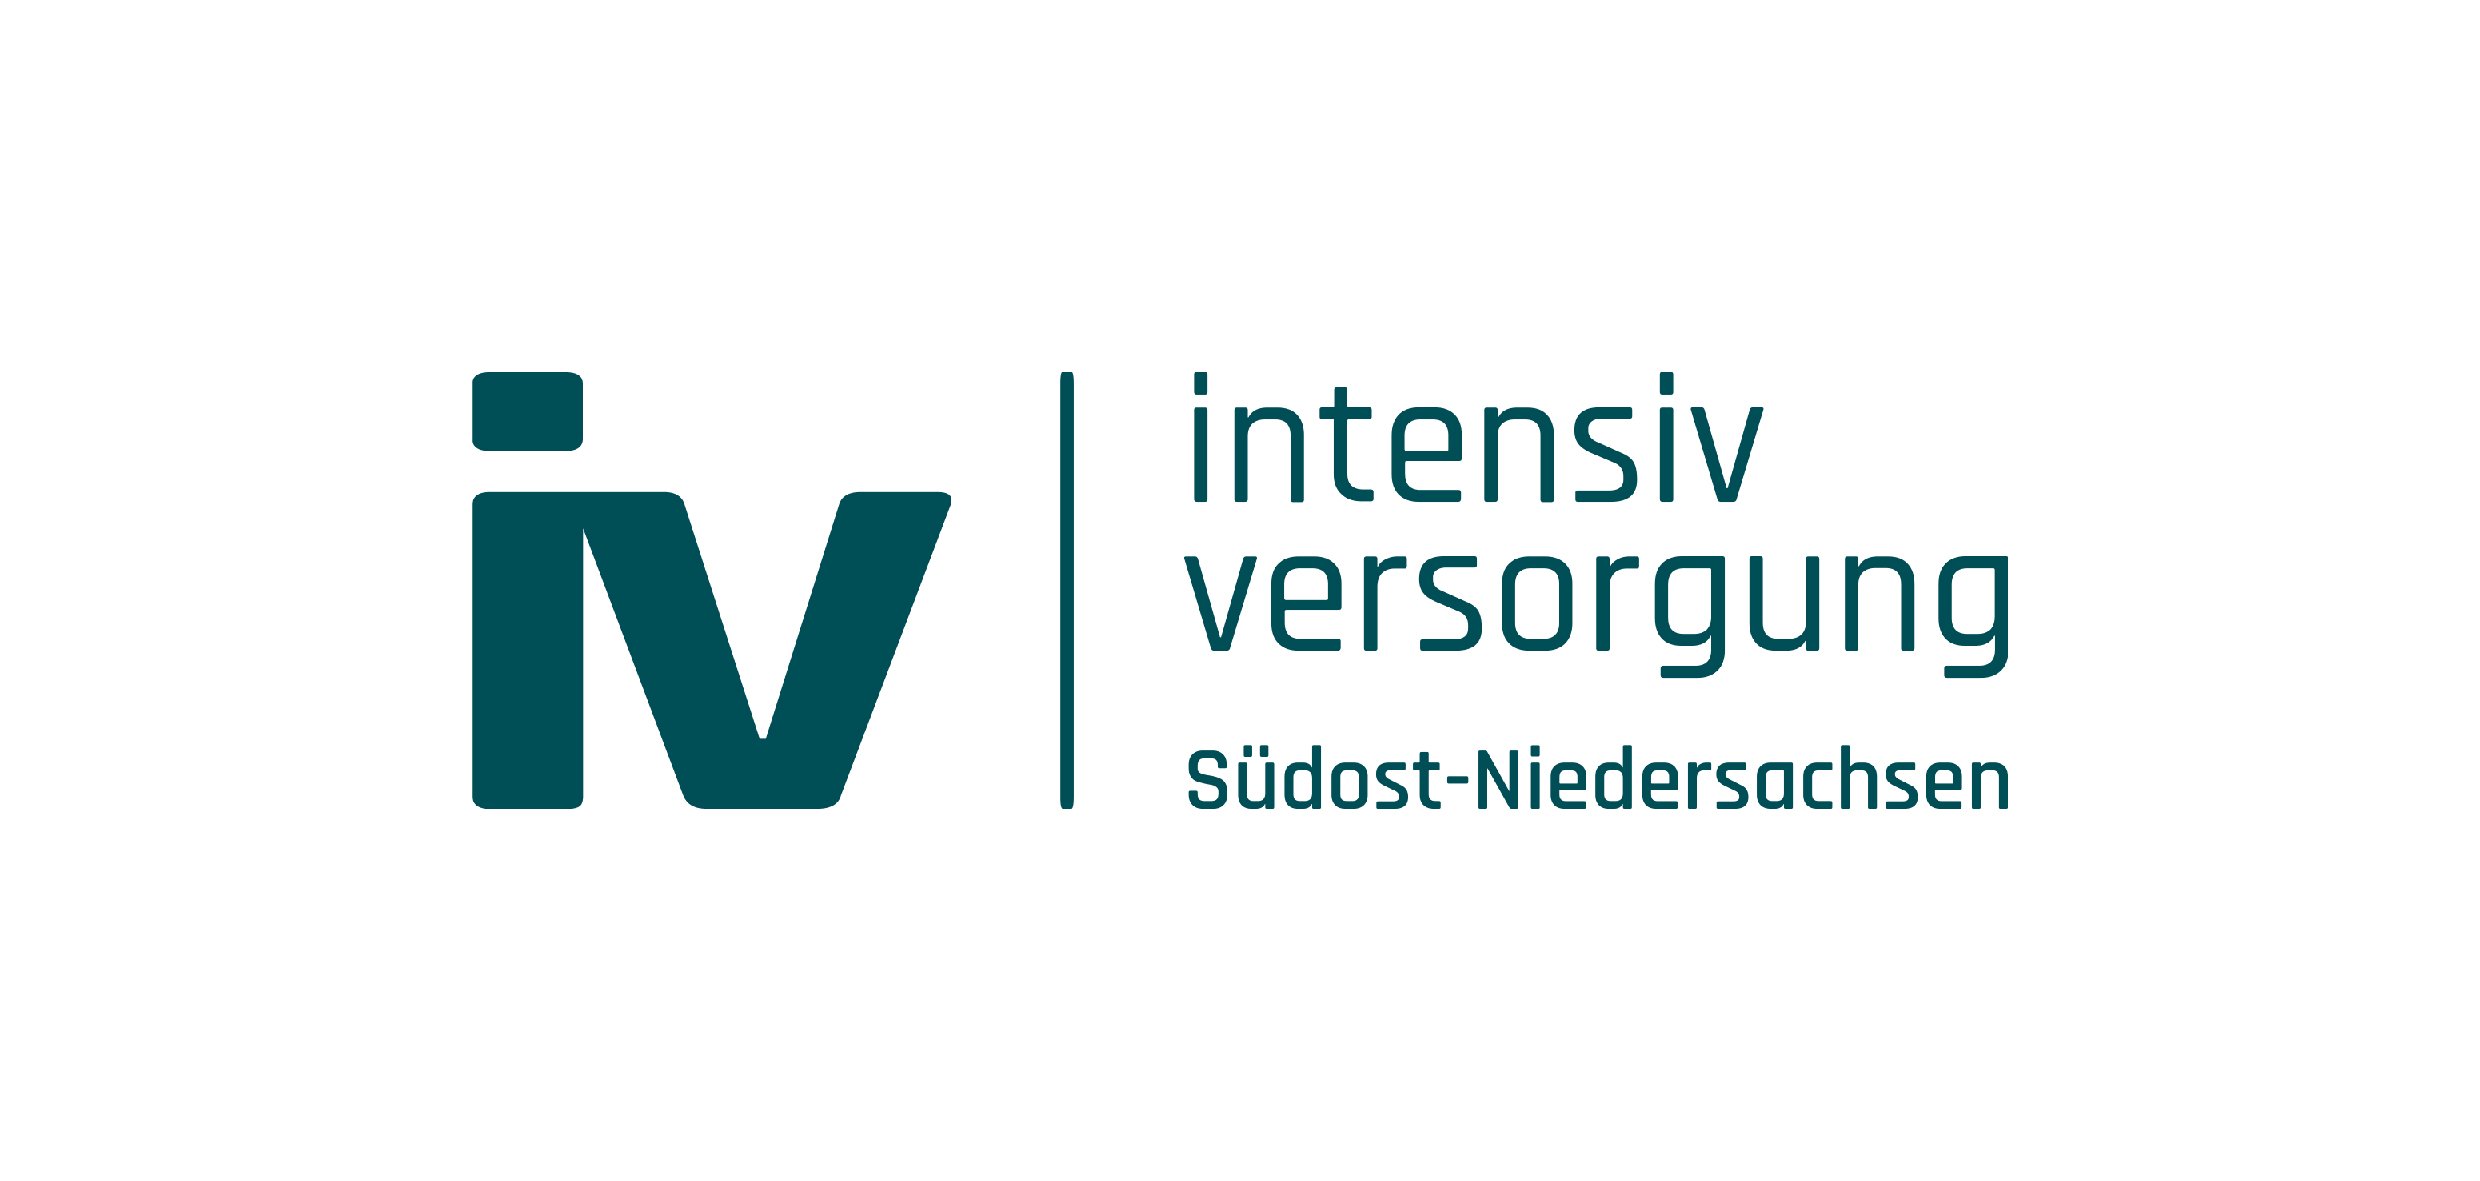 Intensiv Versorgung Südost-Niedersachsen - Außendarstellung, Corporate Identity, Webdesign